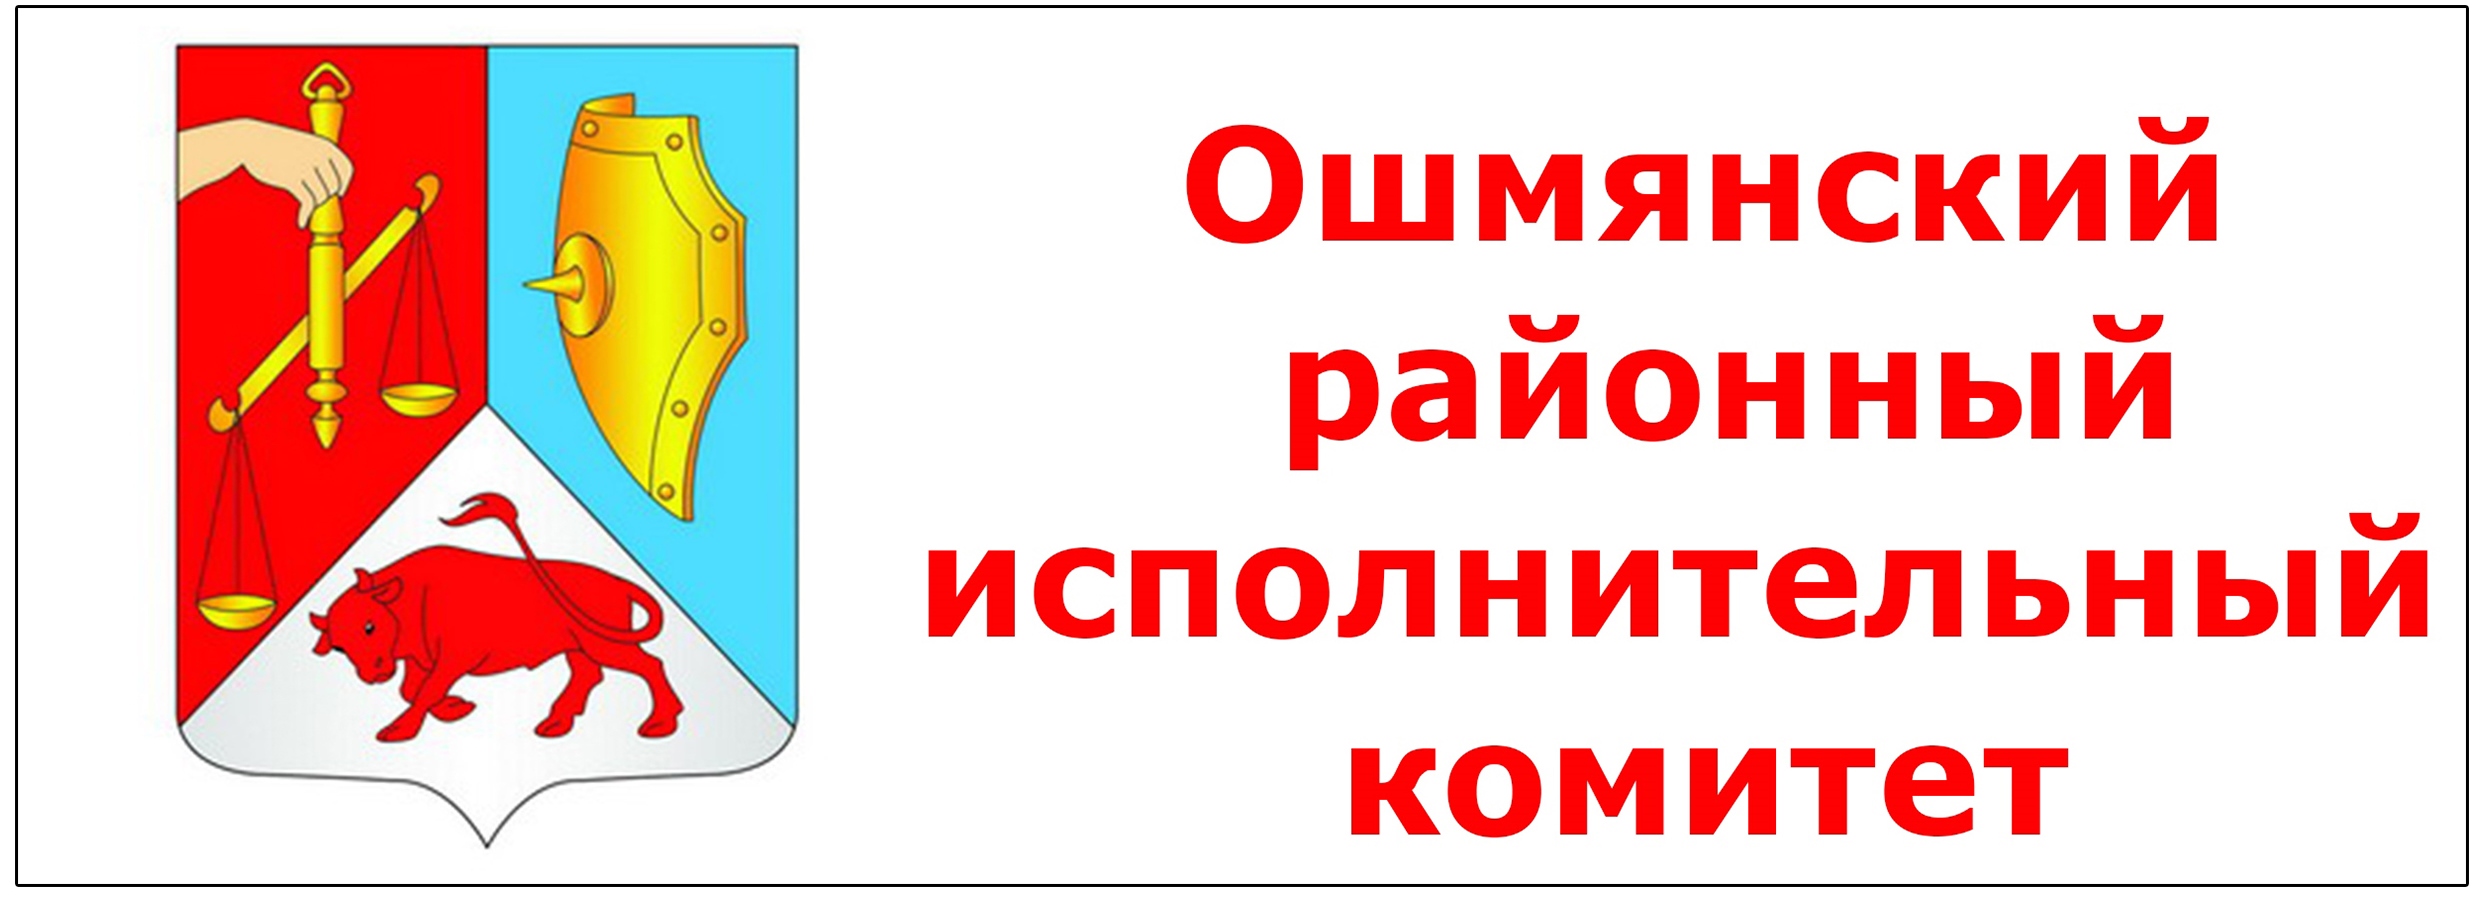 Ошмянский районный исполнительный комитет